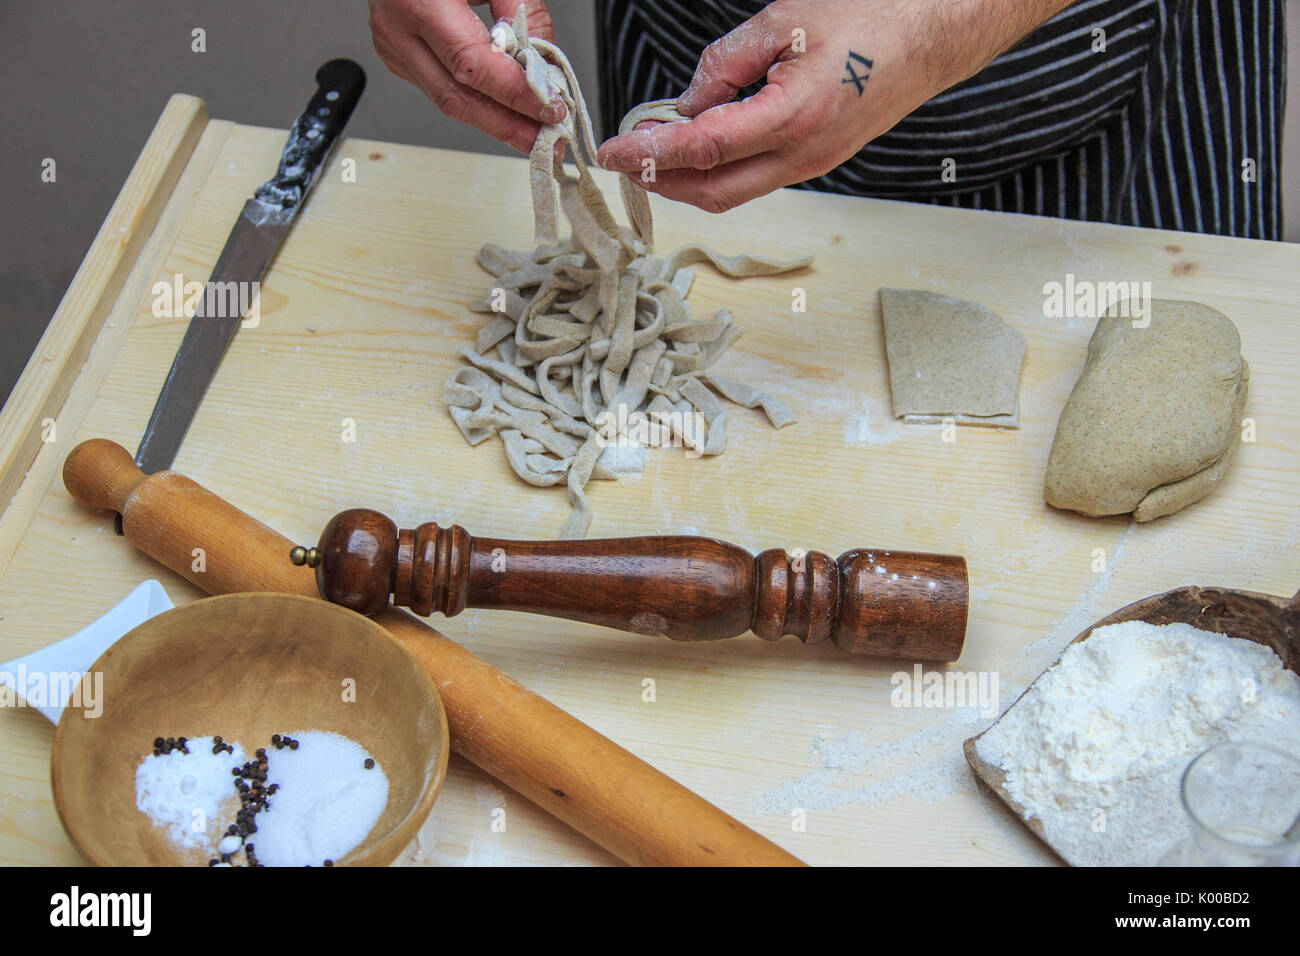 Pizzoccheri dans les mains du chef prêt à cuire. La Lombardie. L'Italie. L'Europe Banque D'Images